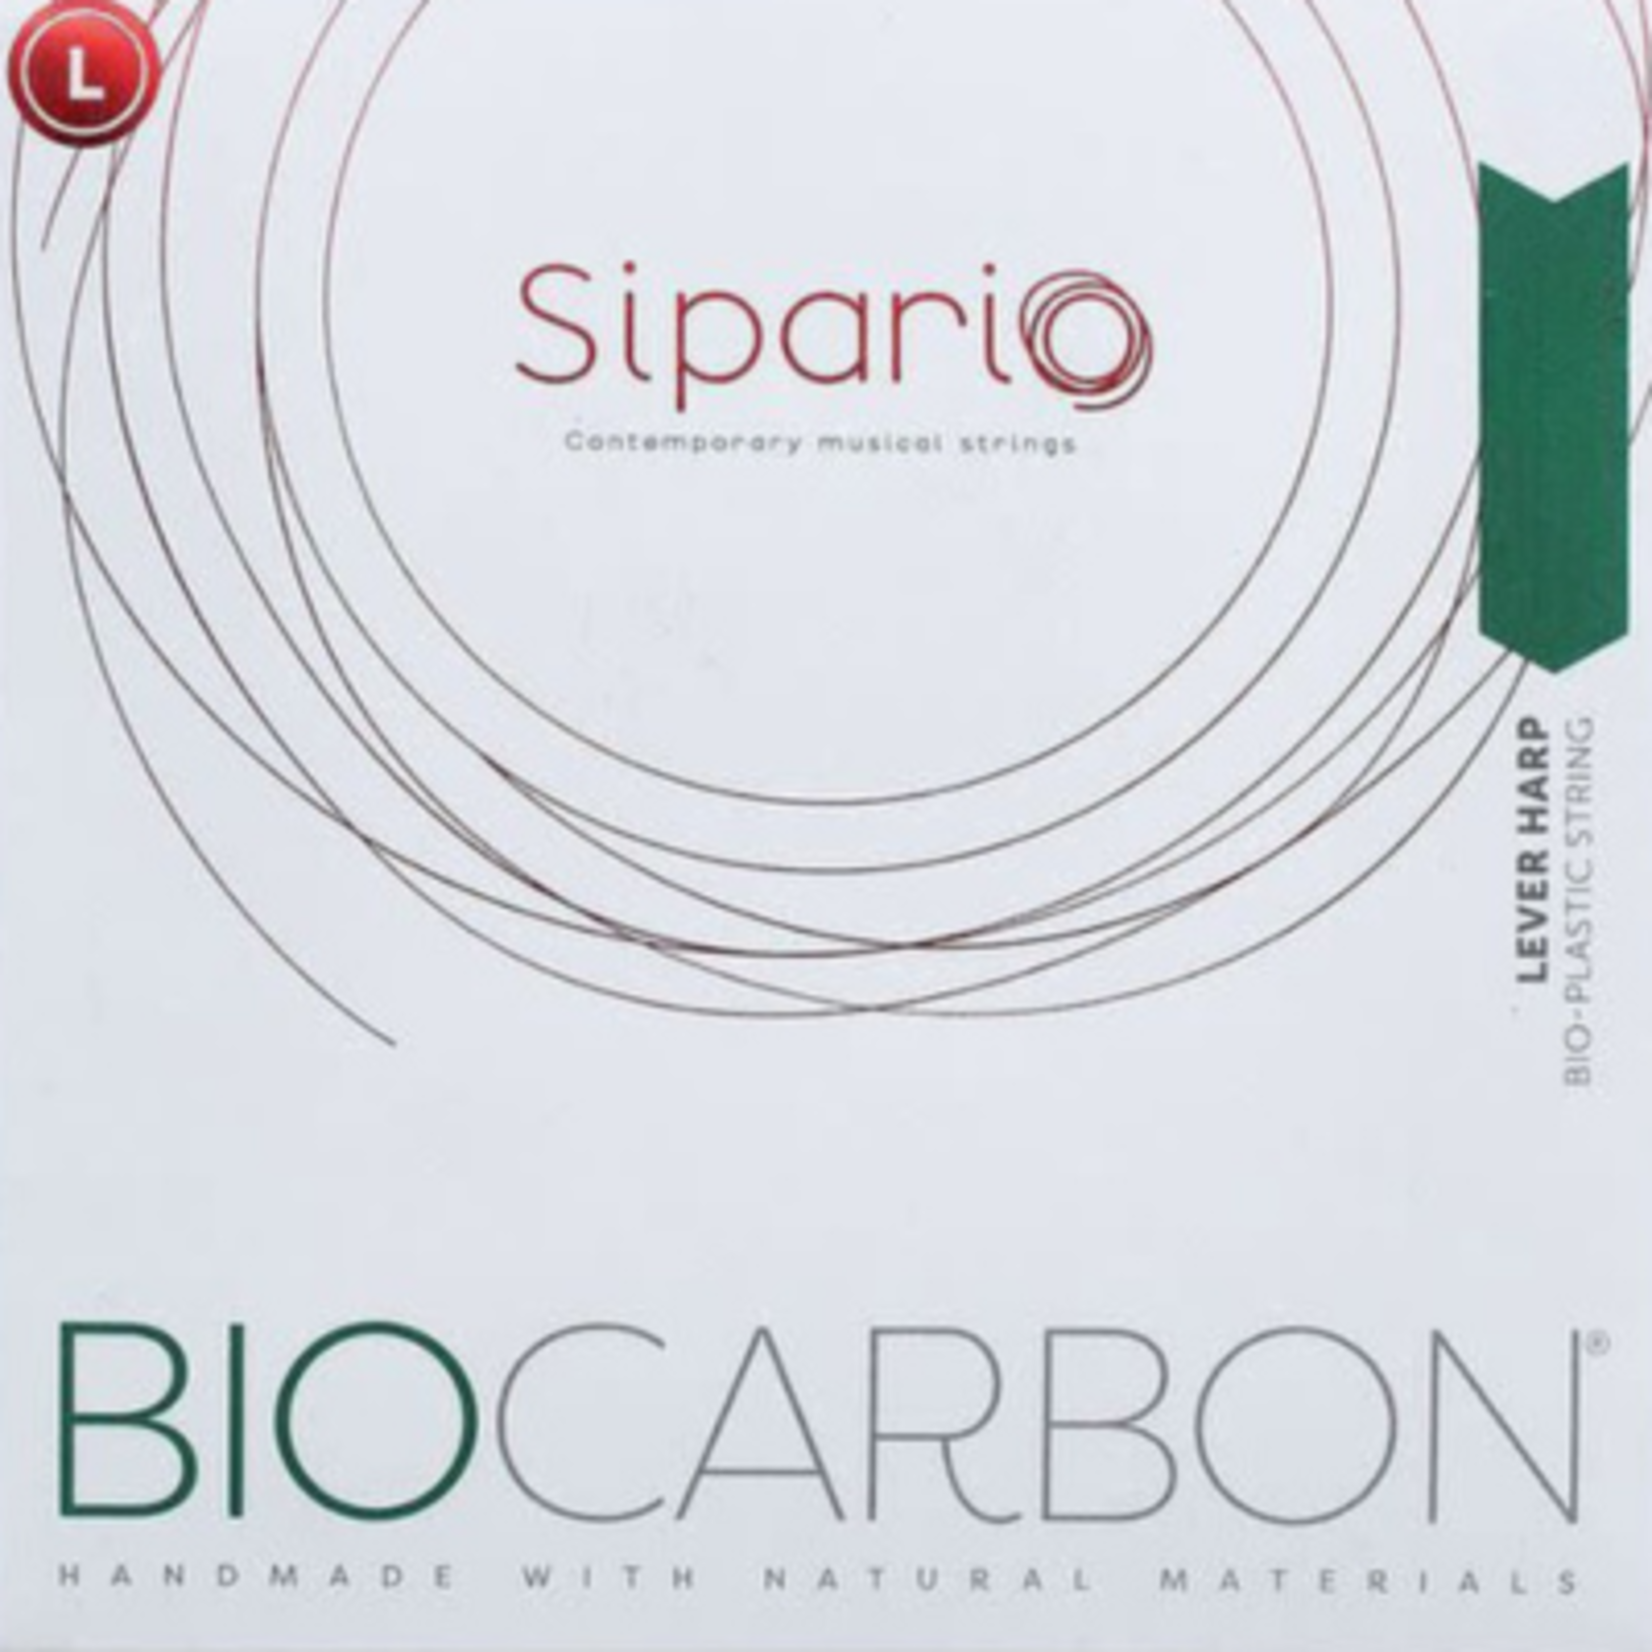 SIPARIO klep biocarbon (set) - 4de octaaf - inclusief 5% korting